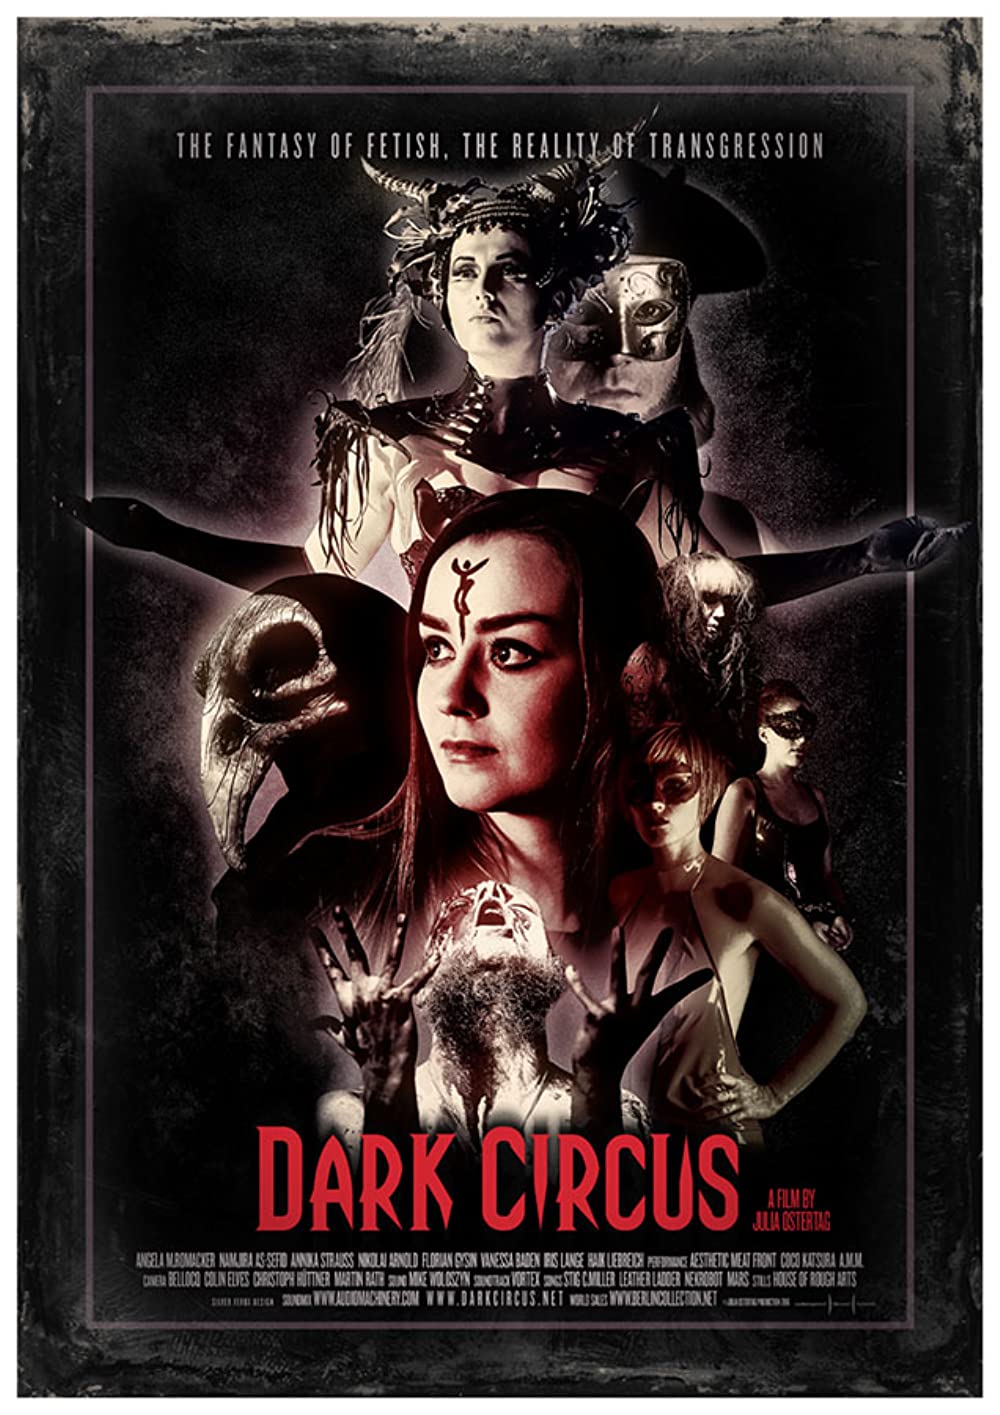 Filmbeschreibung zu Dark Circus